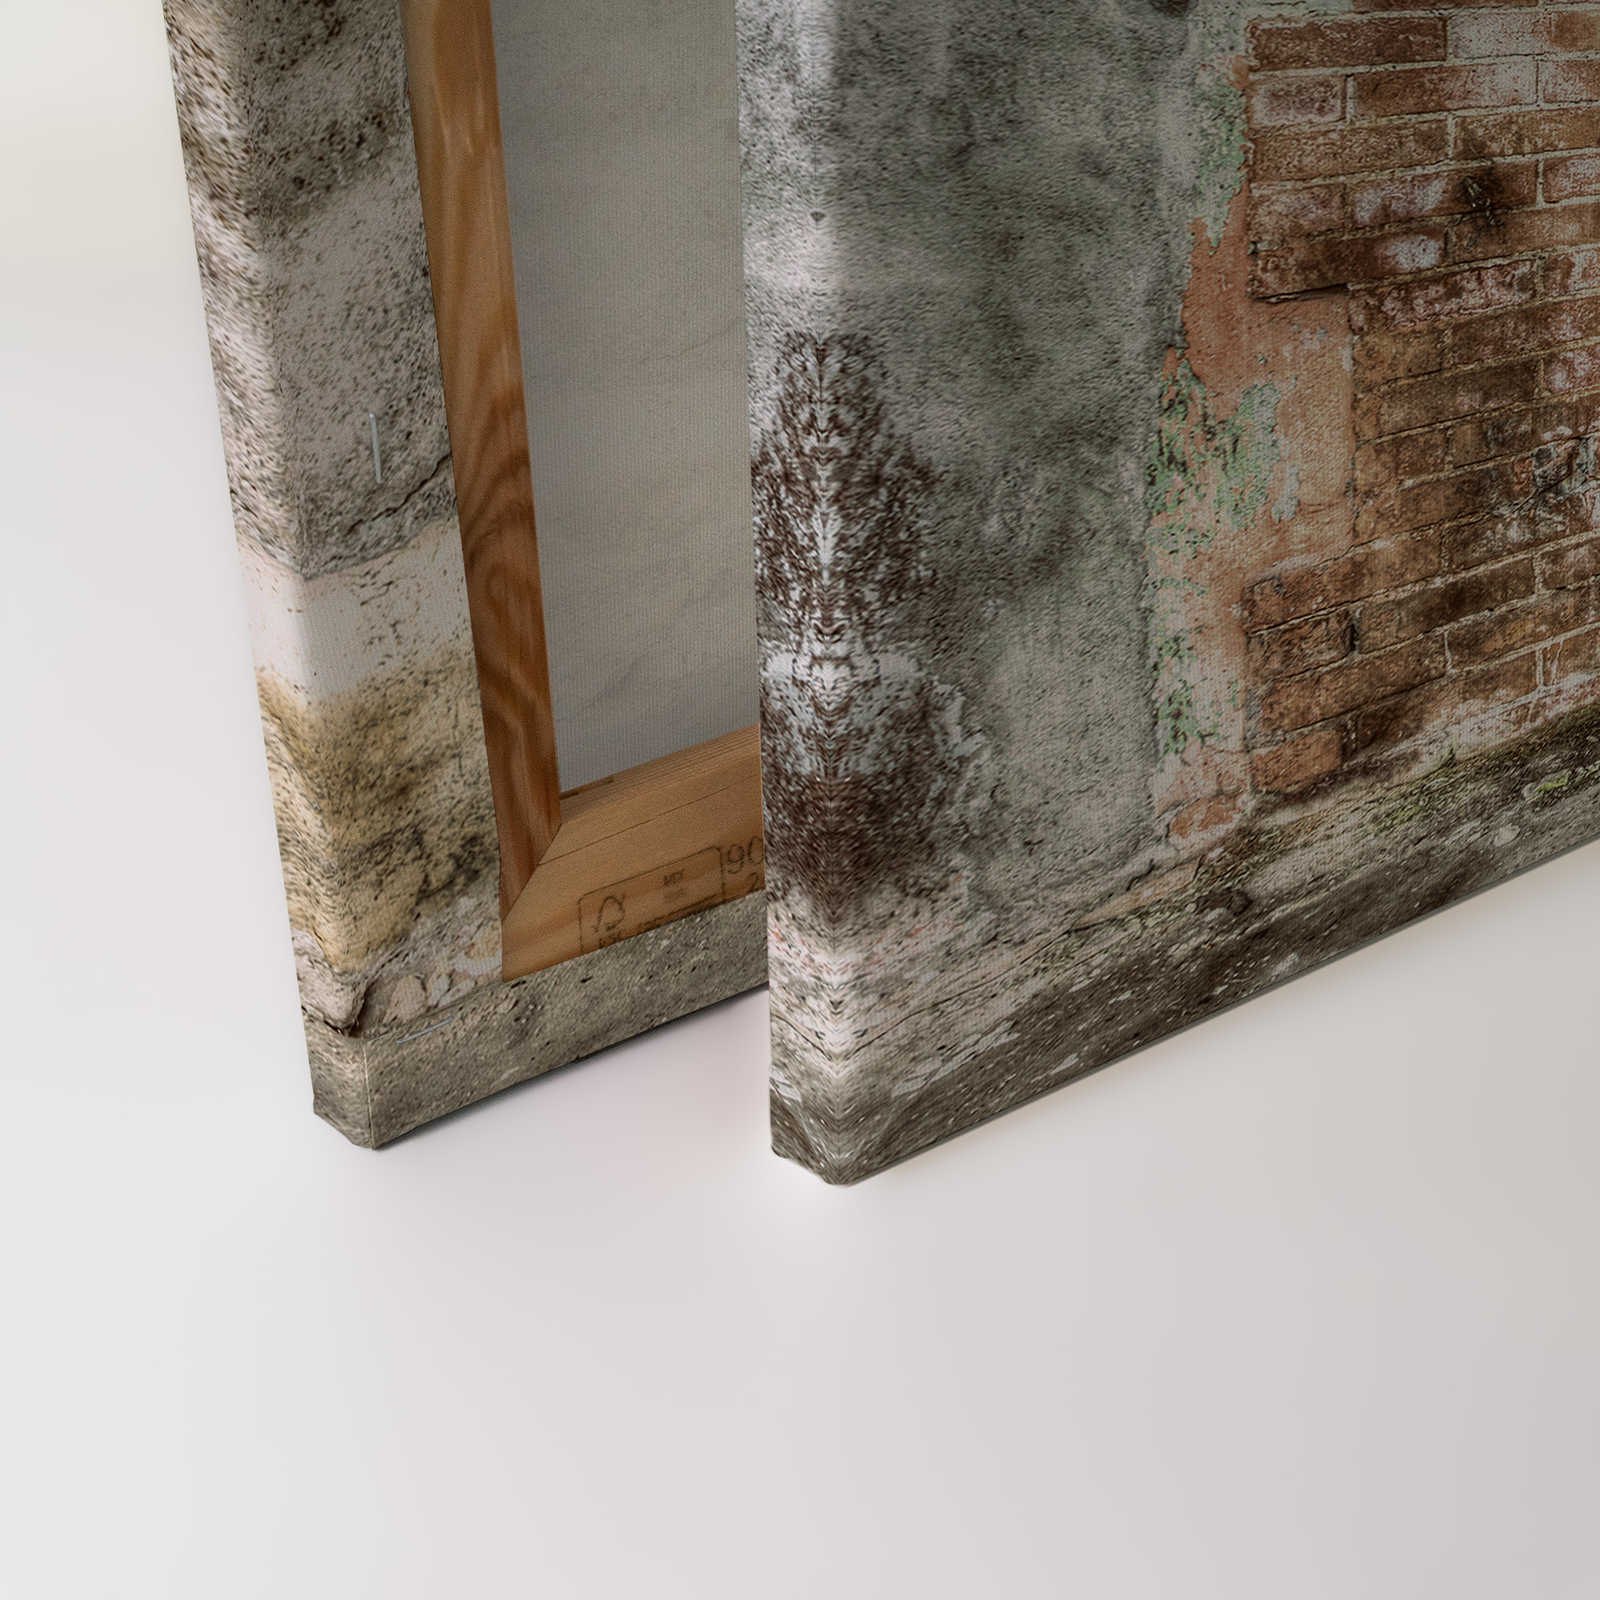             Toile mur de pierre avec portes de toilettes vintage | beige, crème - 0,90 m x 0,60 m
        